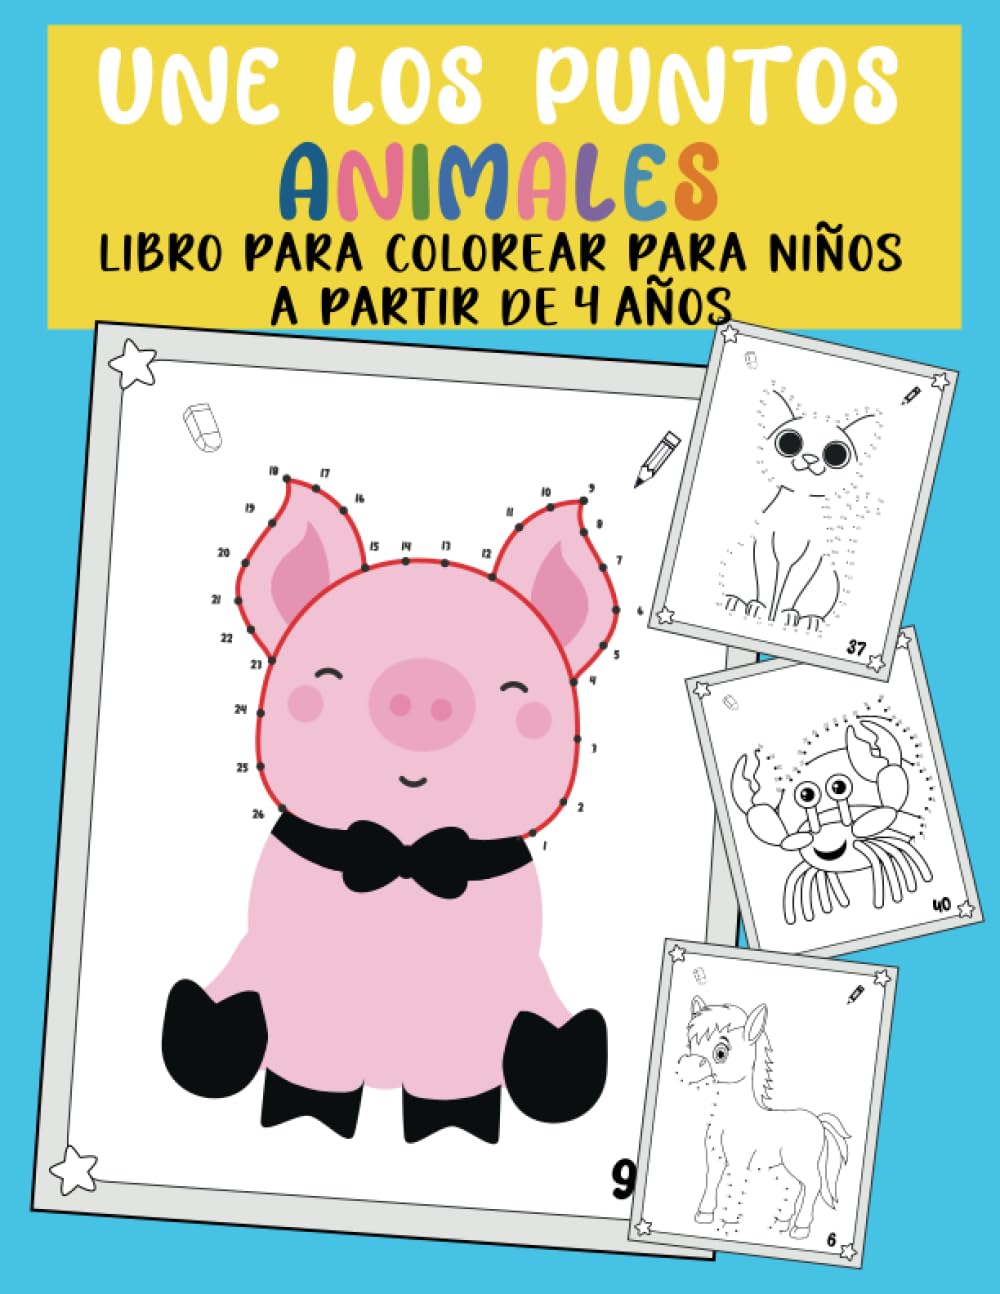 Libro: Une los puntos Animales - Libro para colorear para niños a partir de 4 años por Lina Mikhal